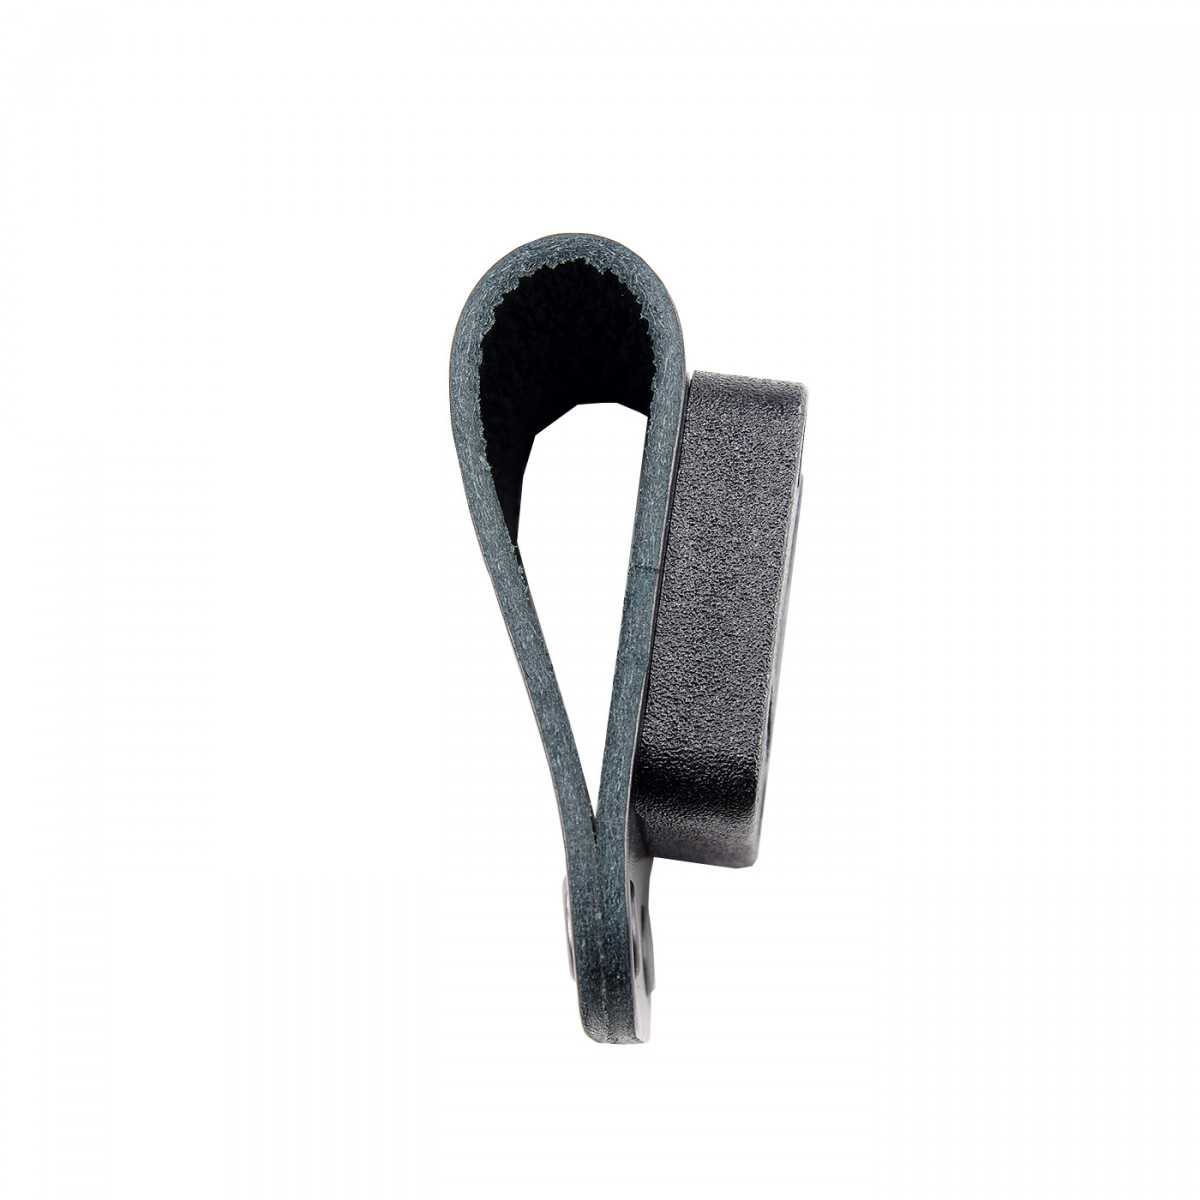 SEPURA Klick-Fast leather loop short for belts up to 50mm wide DOCK05BL